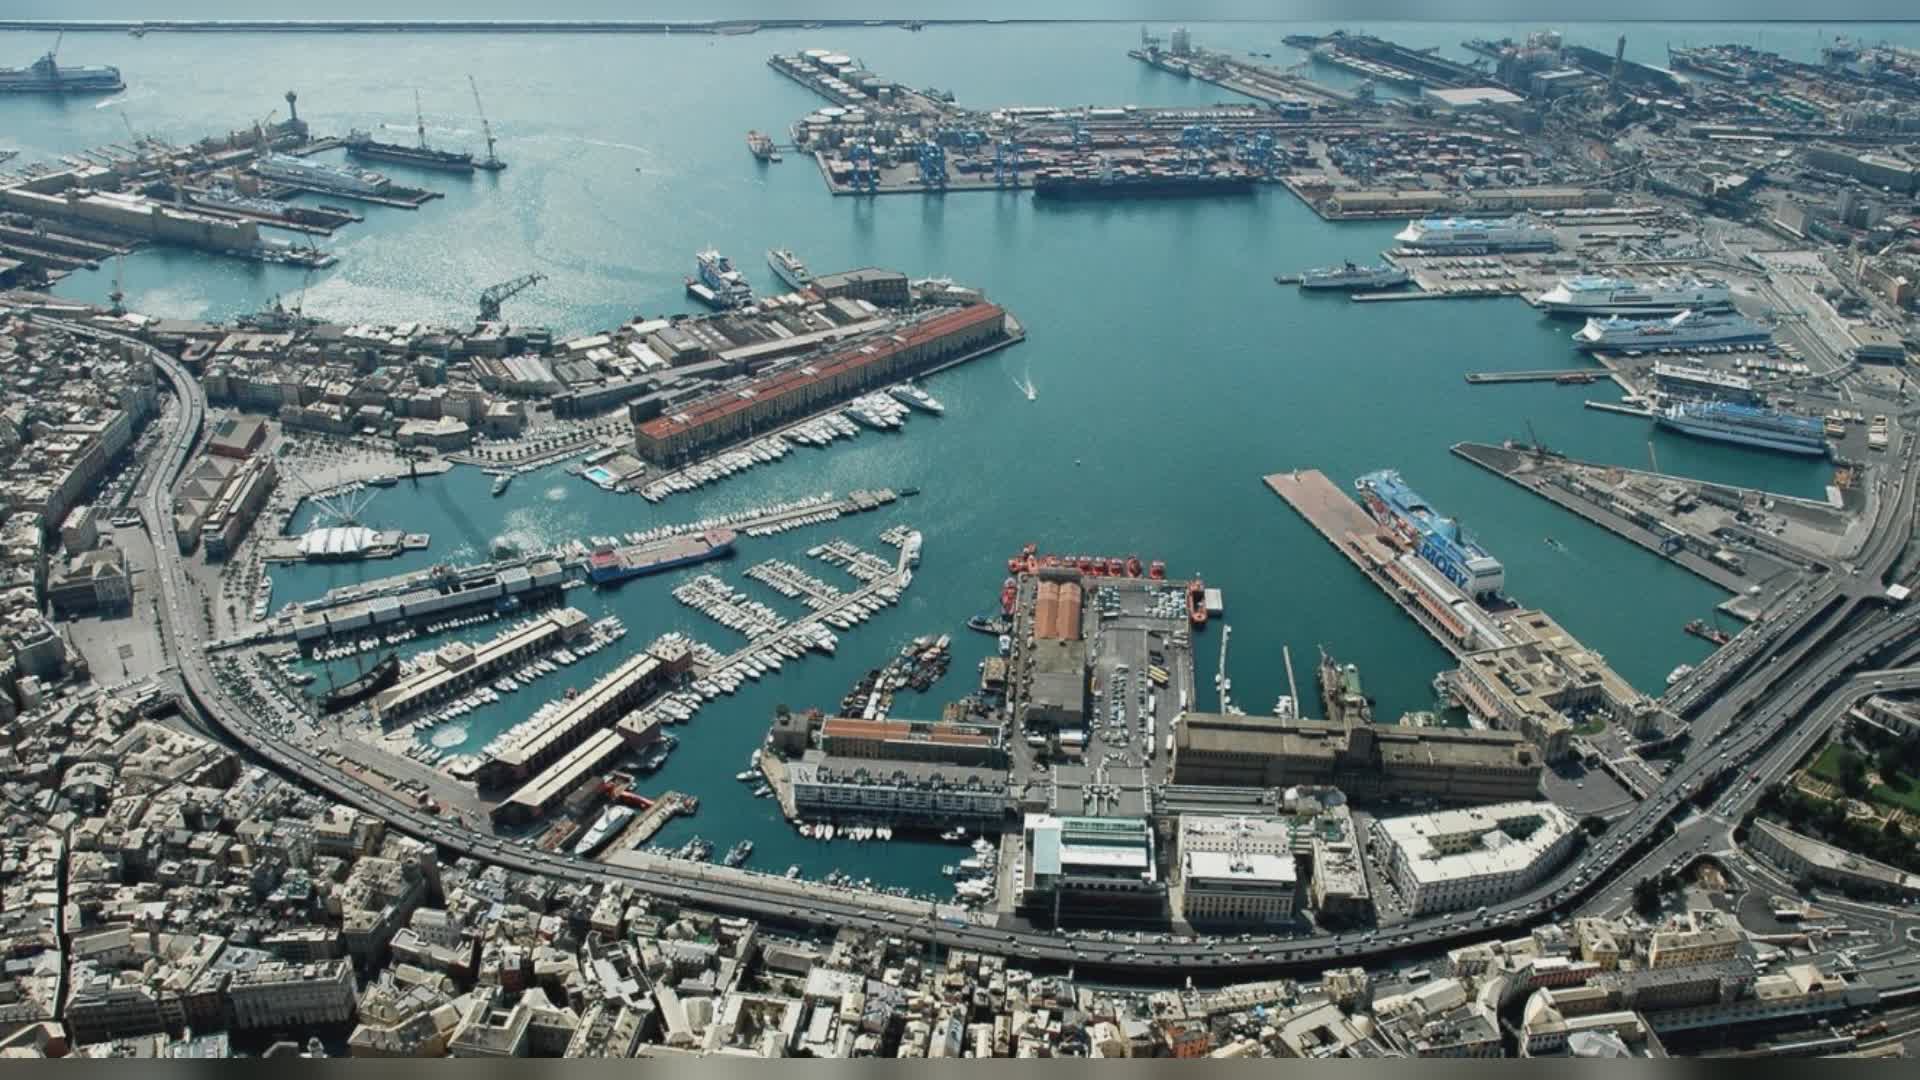 Porti Genova e Savona: polo logistico del Mediterraneo di riferimento per la supply chain dell’asse sud-nord dell’Europa